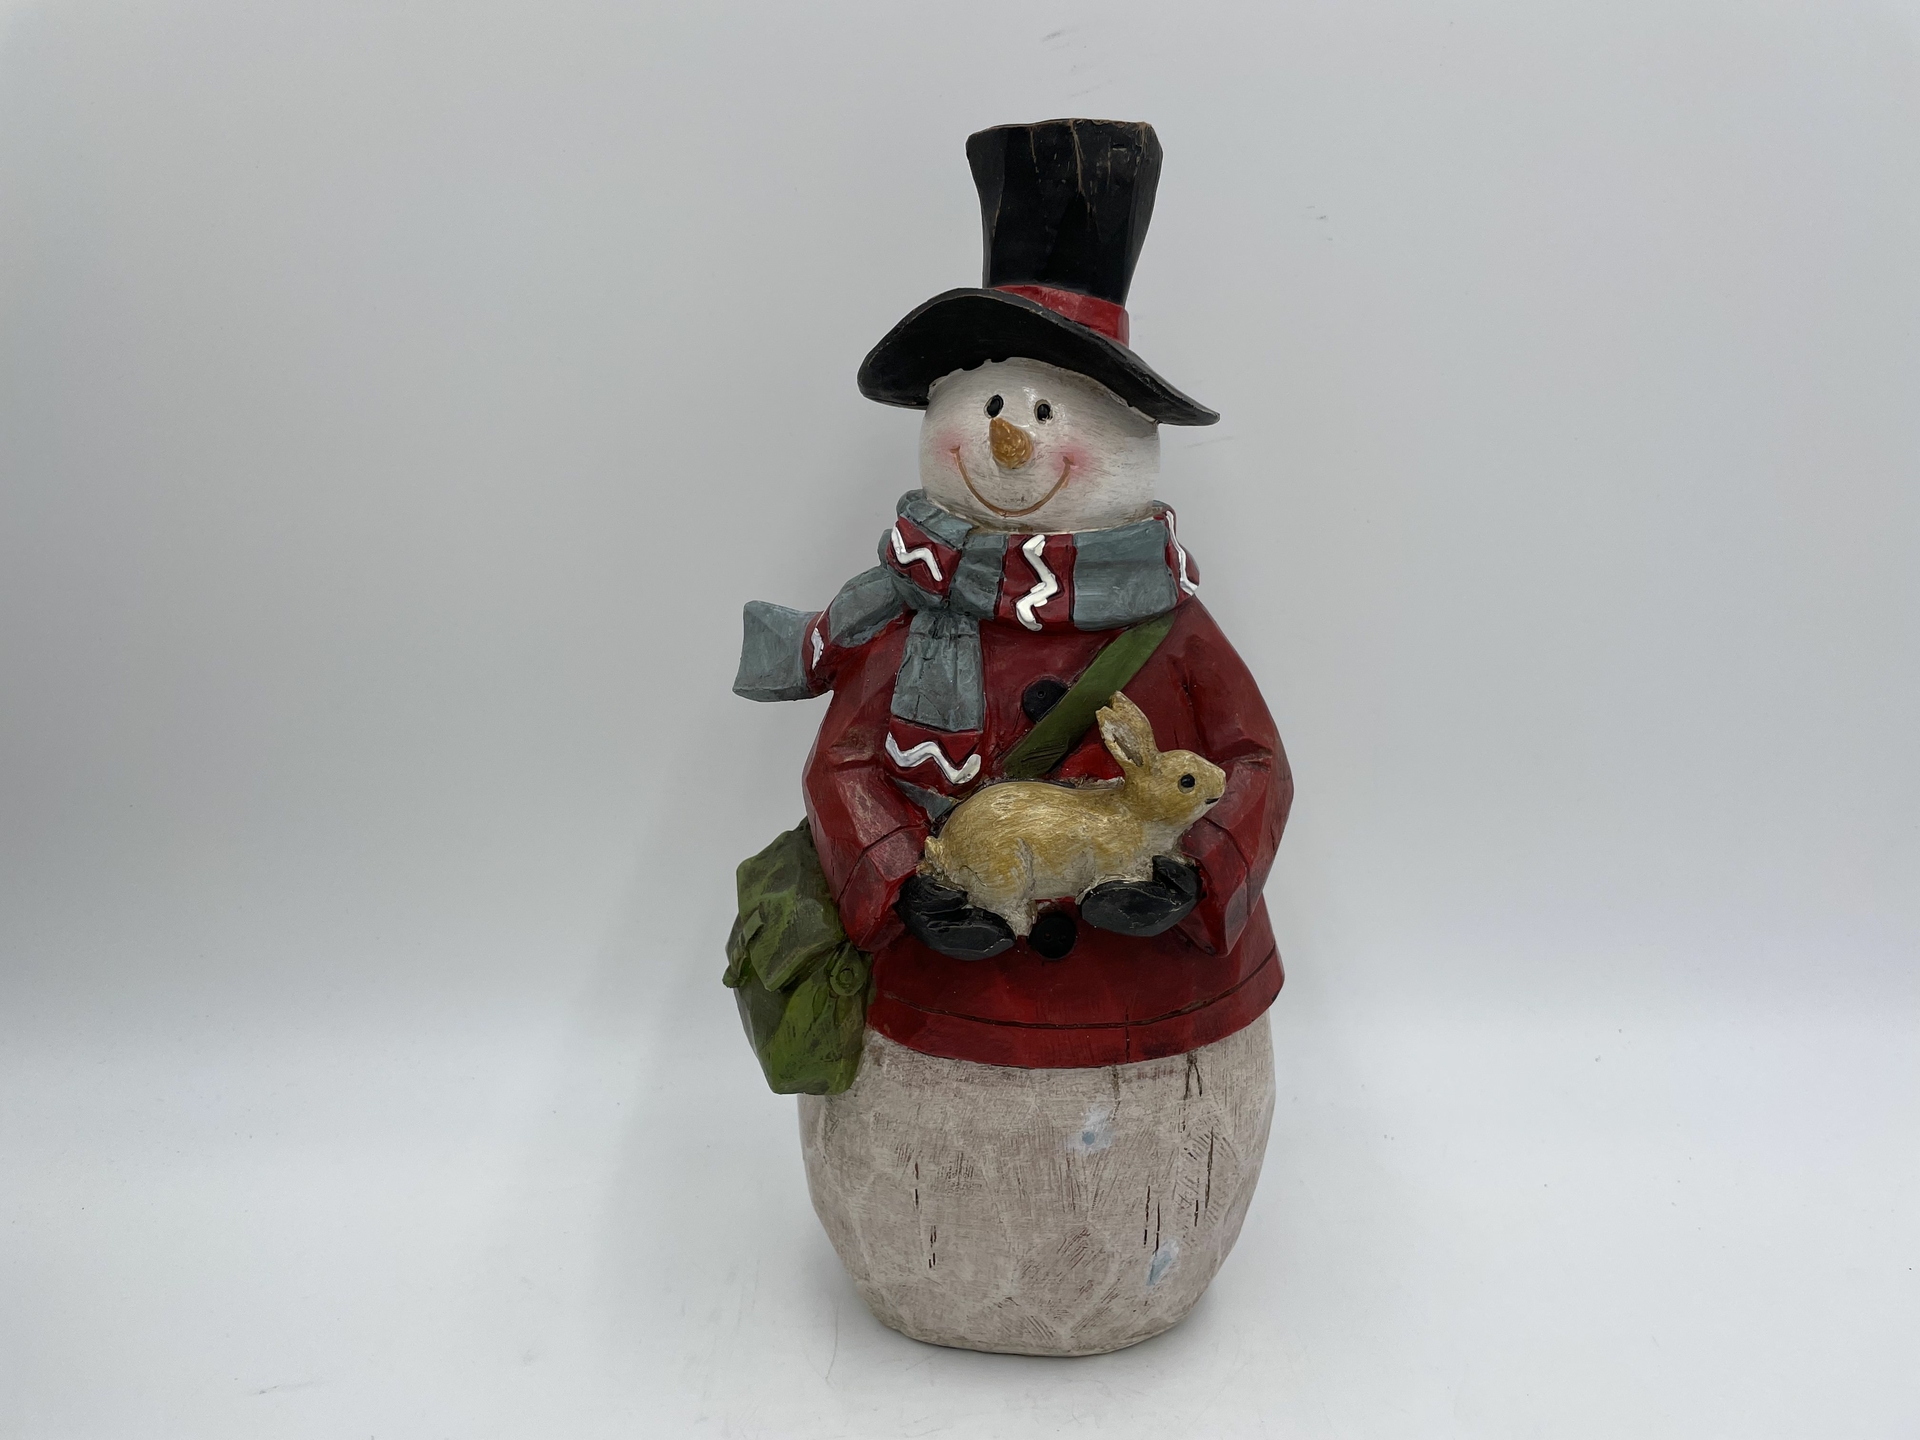 Sneeuwman sjaal pop hout rood wit groen decoratie beeld 28 cm met konijn & tas | US1170050B | Home Sweet Home